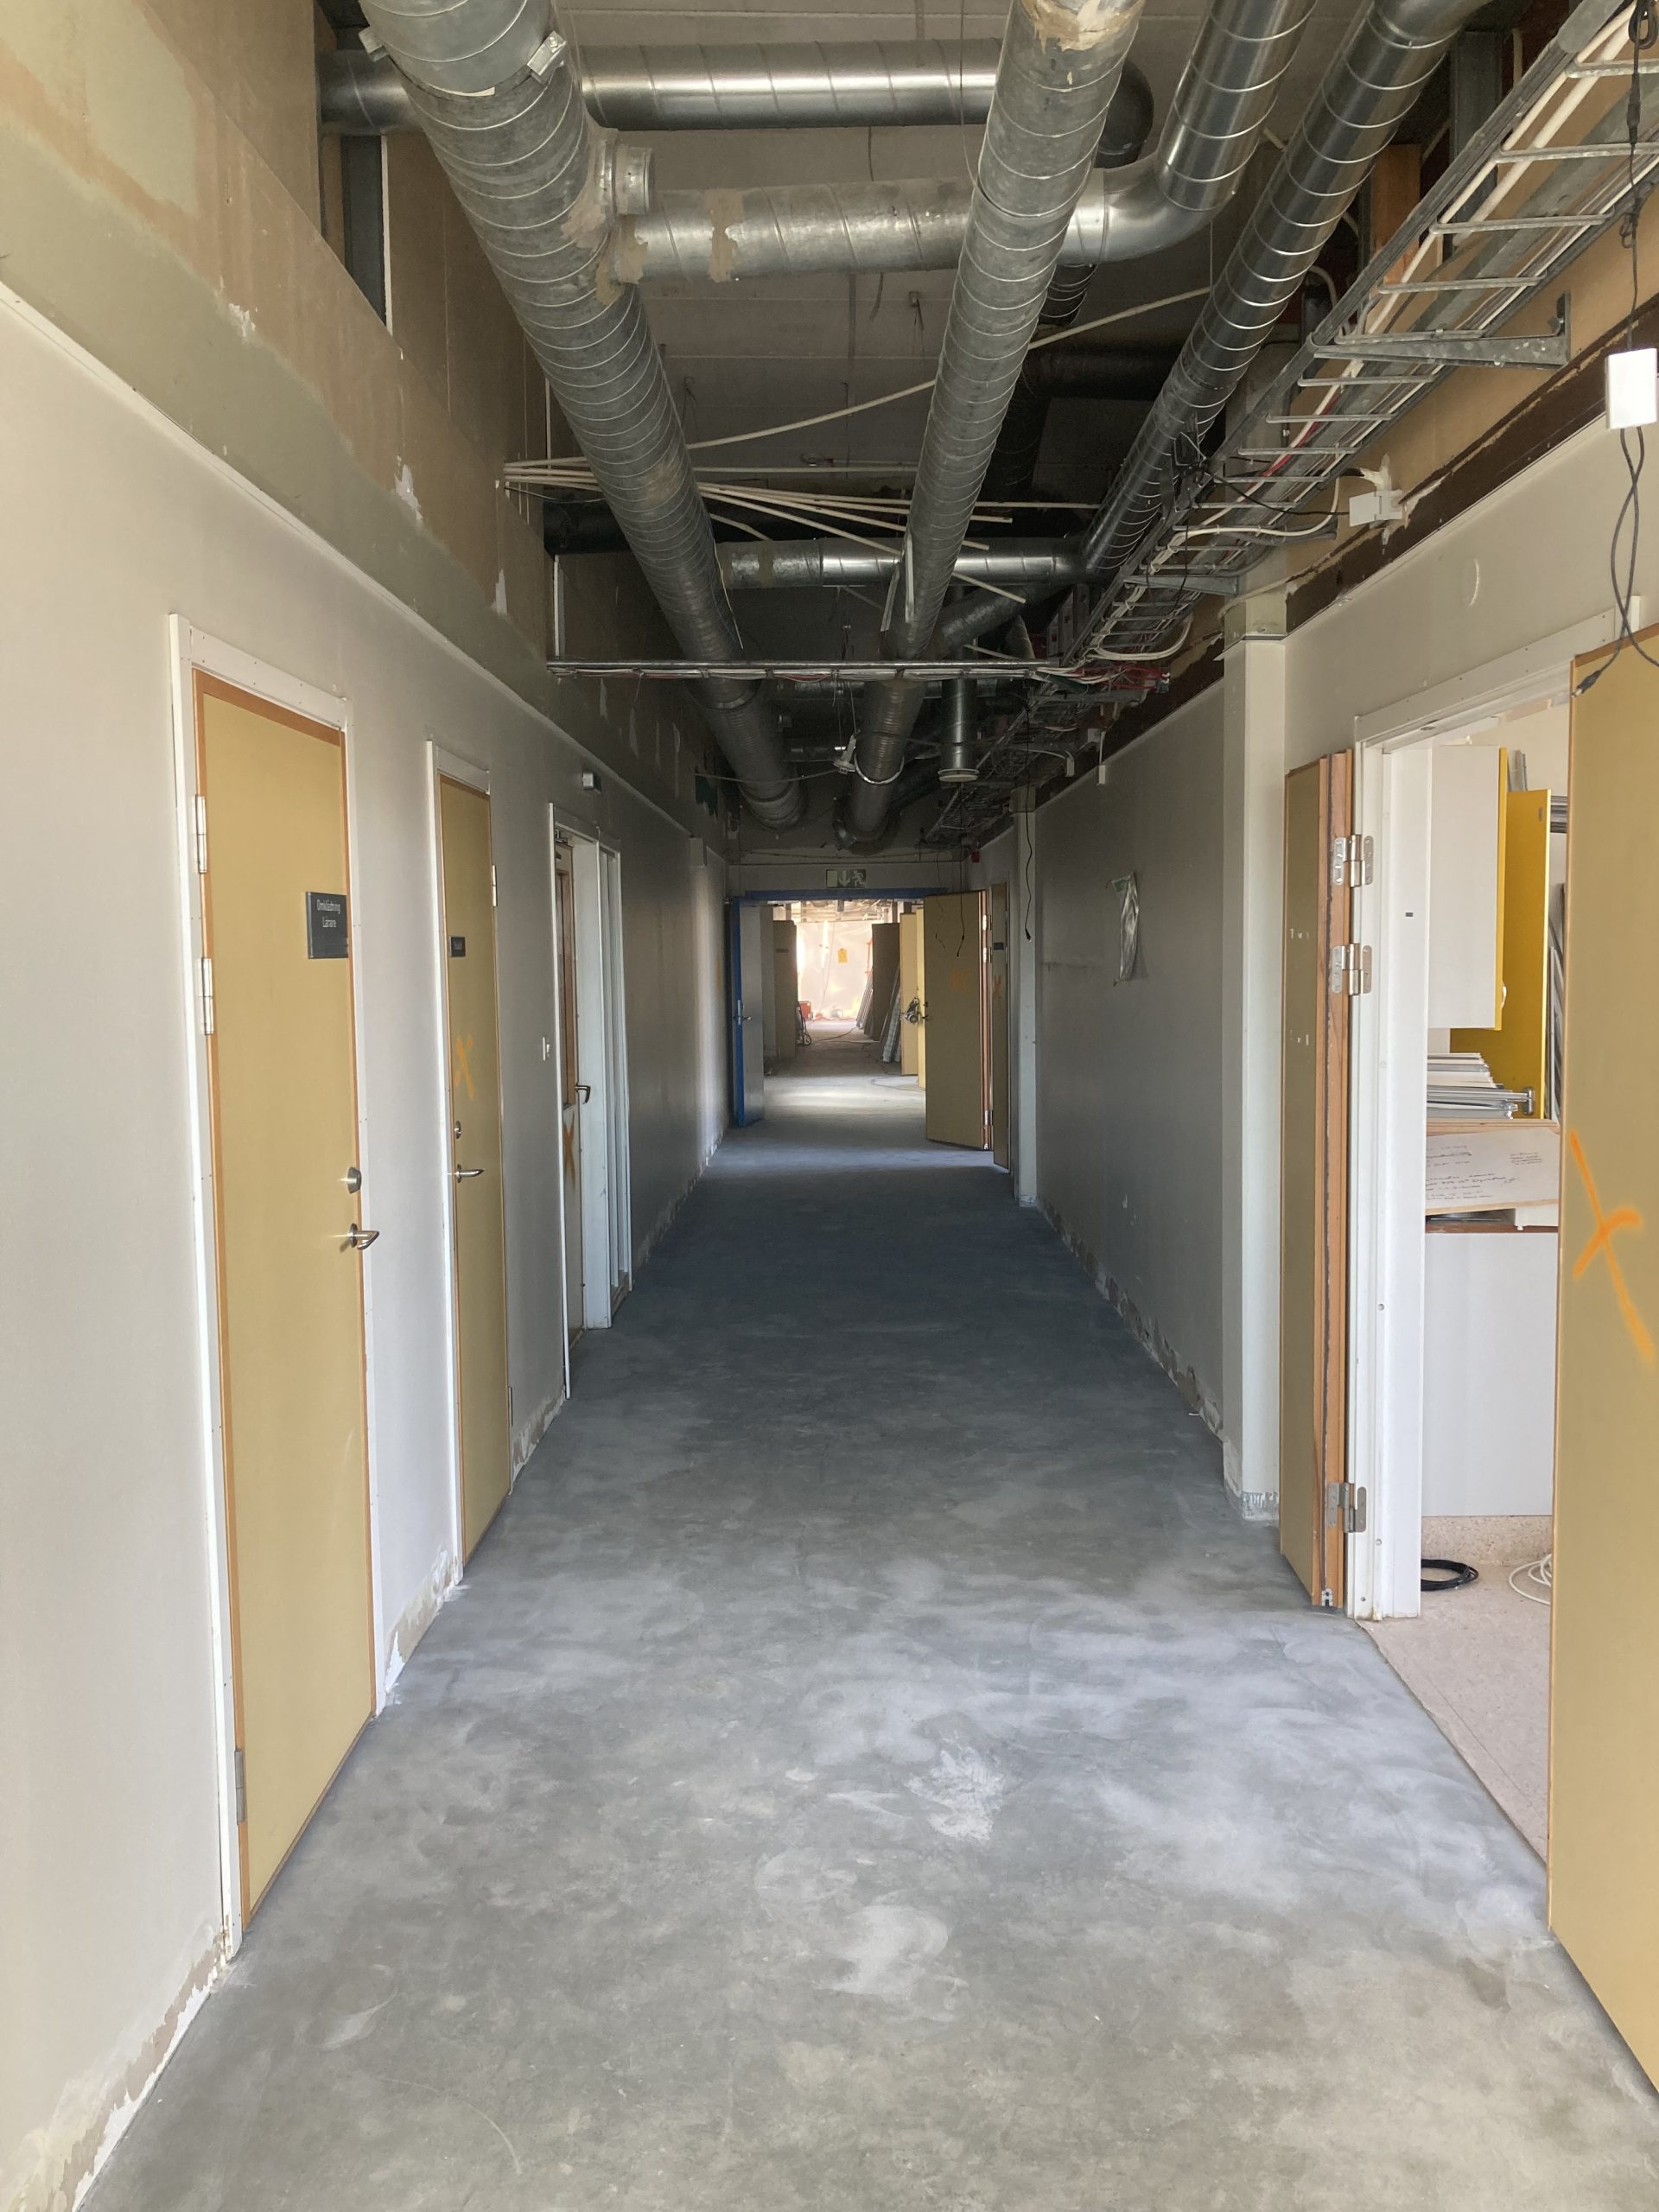 Rivningsbilder från projektet, här en tråkig korridor med gamla gula dörrar